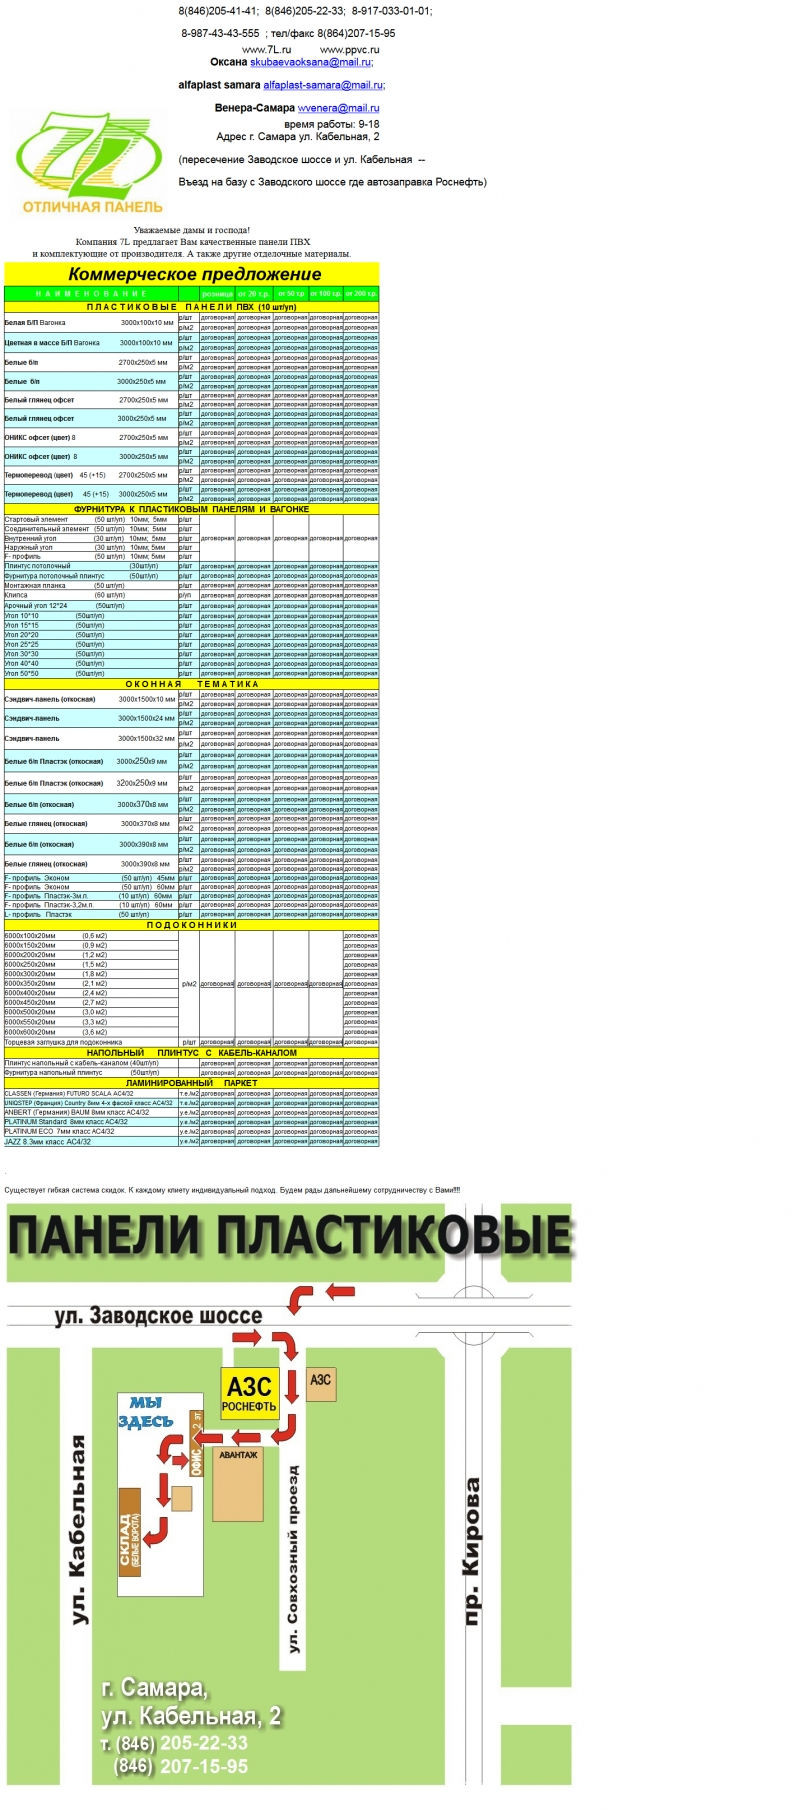 Скриншот сайта «7l.ru» от 08.04.2015 года